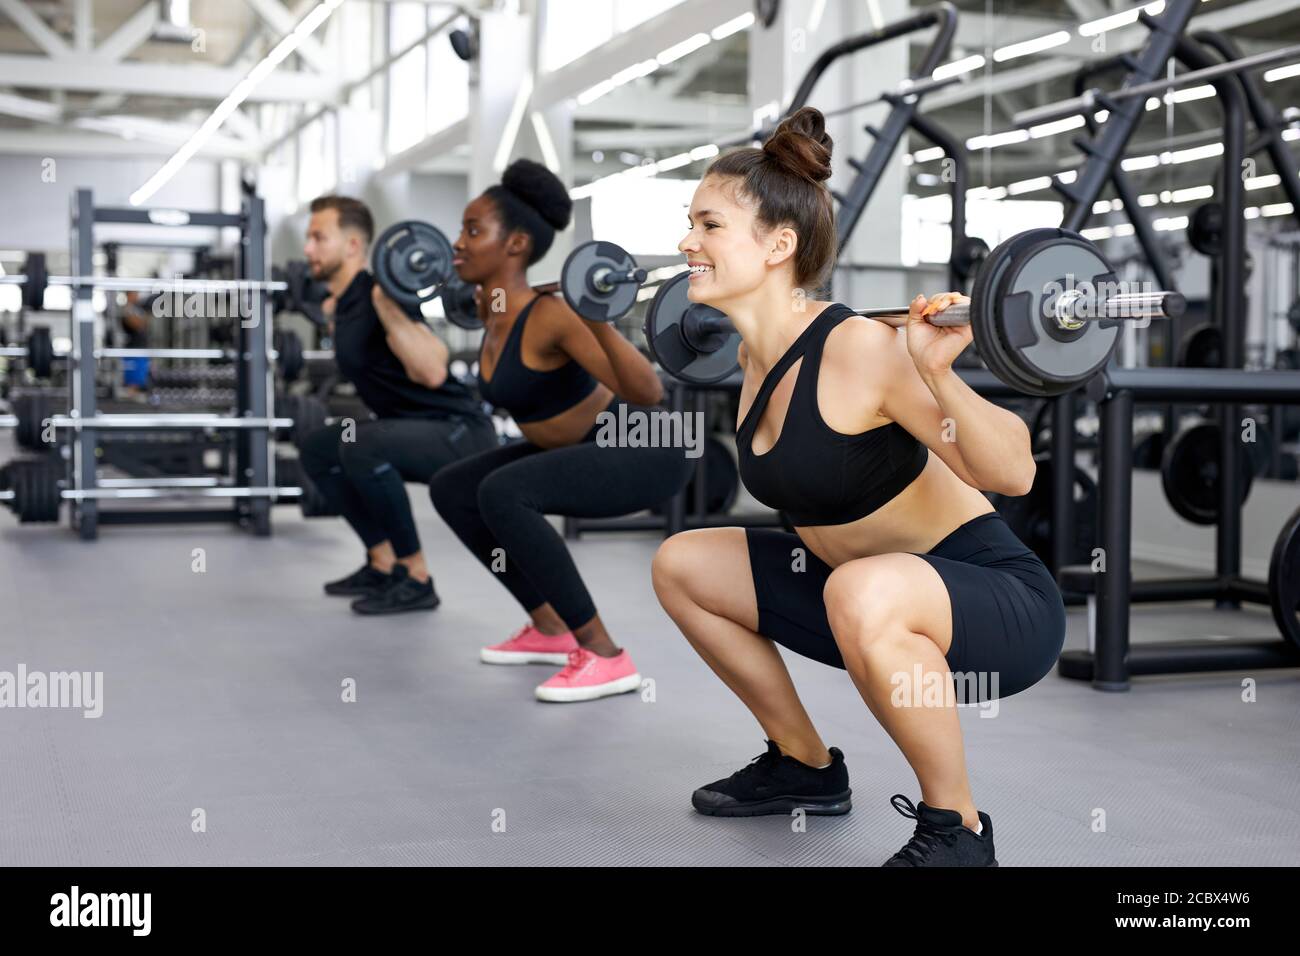 les sportifs, groupe multiethnique, font des exercices avec poids lourds en salle de gym. jeune homme et femme divers entraînement, ont le corps musculaire Banque D'Images